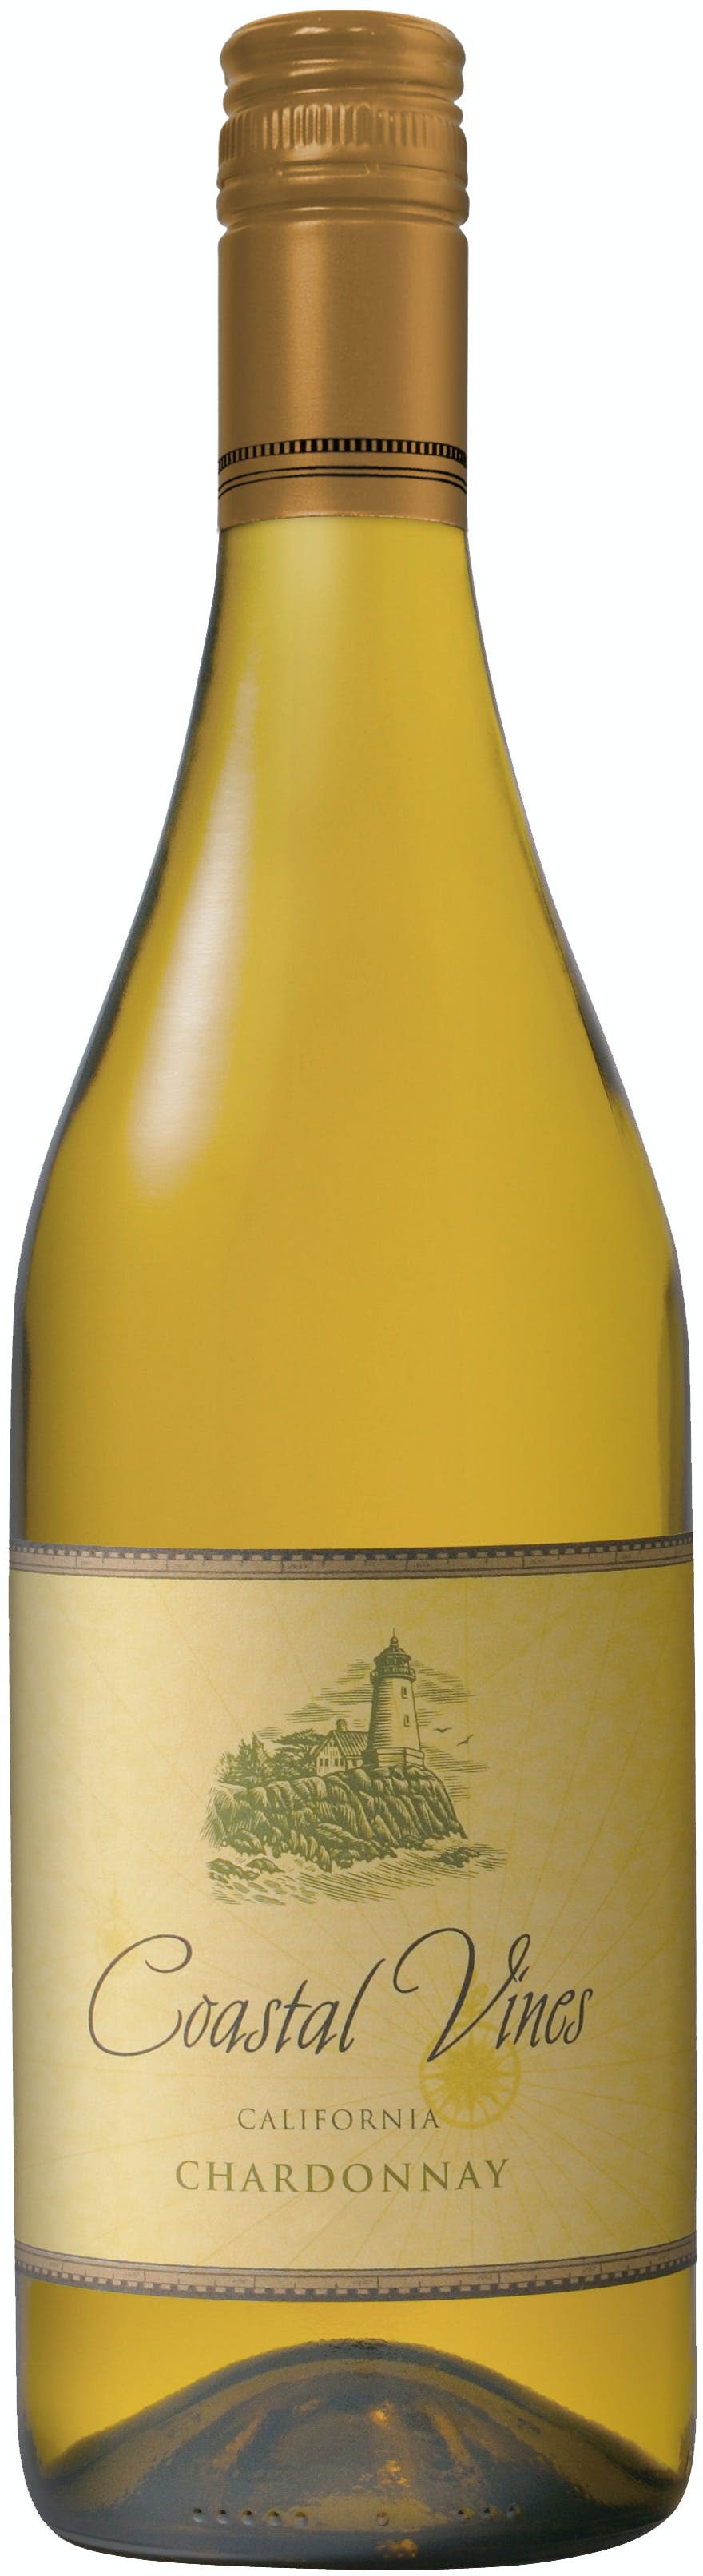 Coastal Vines Chardonnay 2020